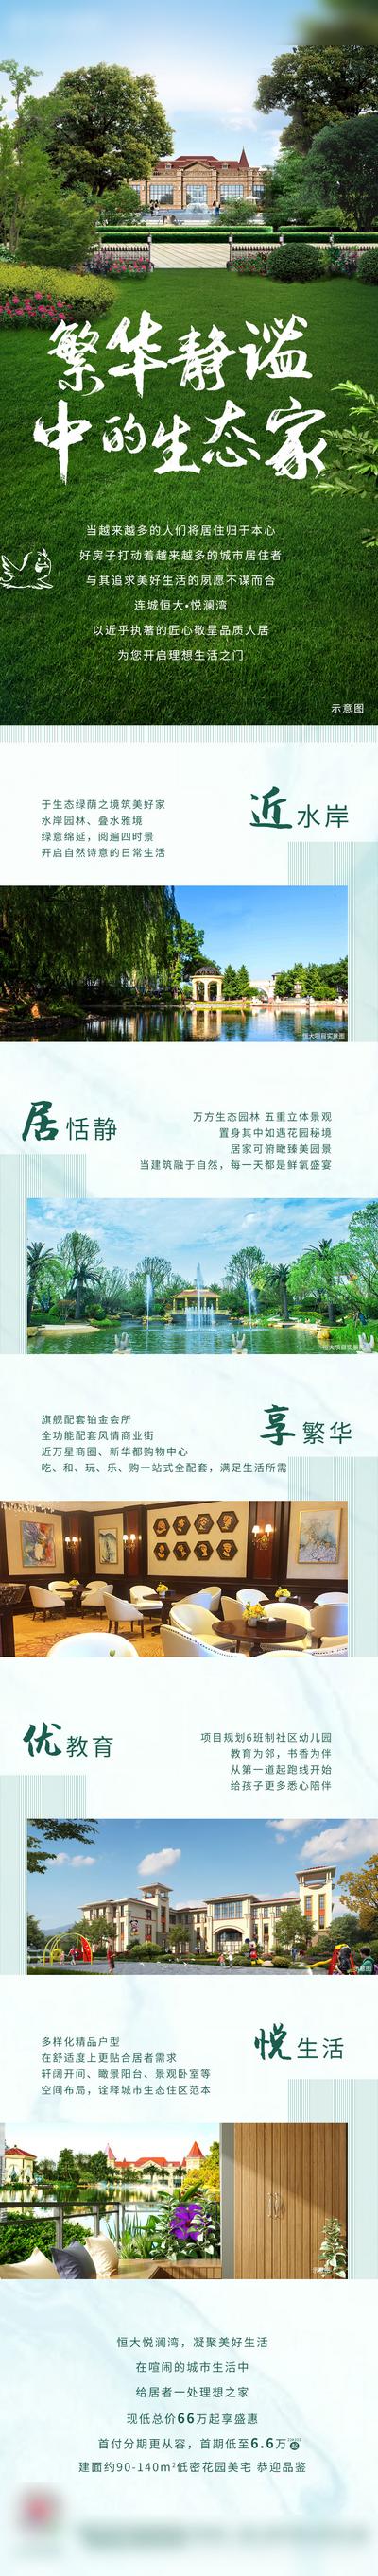 南门网 专题设计 长图 房地产 价值点 园林 绿色 文字 排版